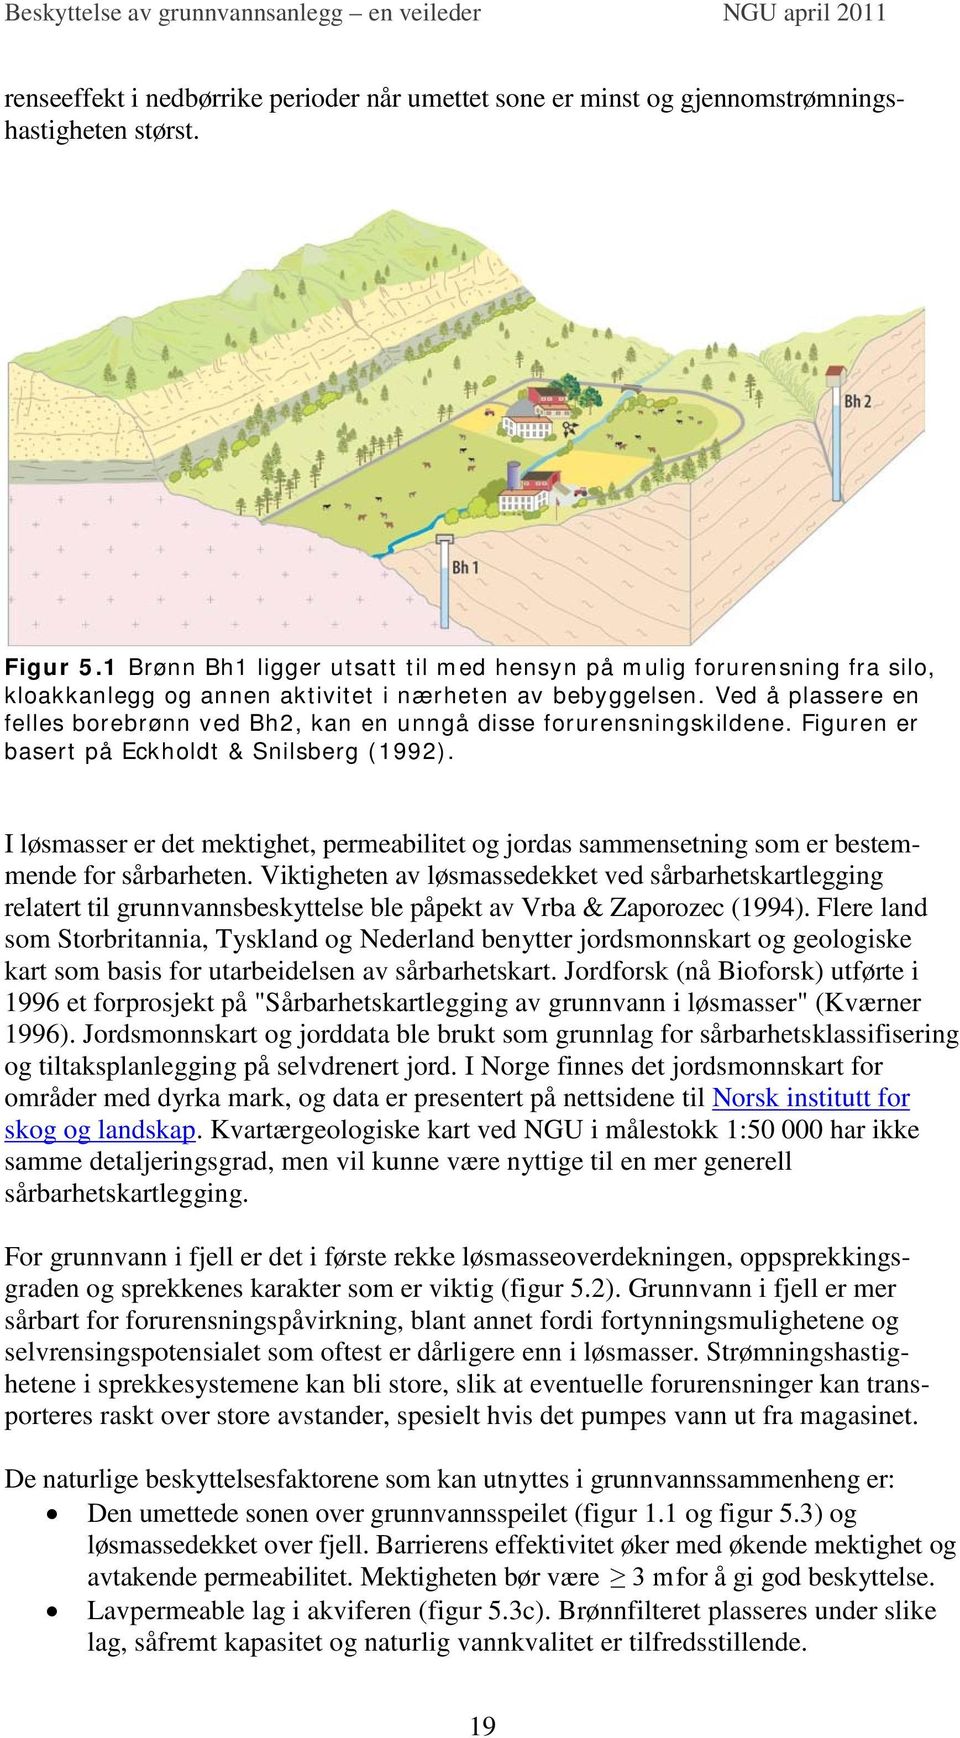 Ved å plassere en felles borebrønn ved Bh2, kan en unngå disse forurensningskildene. Figuren er basert på Eckholdt & Snilsberg (1992).